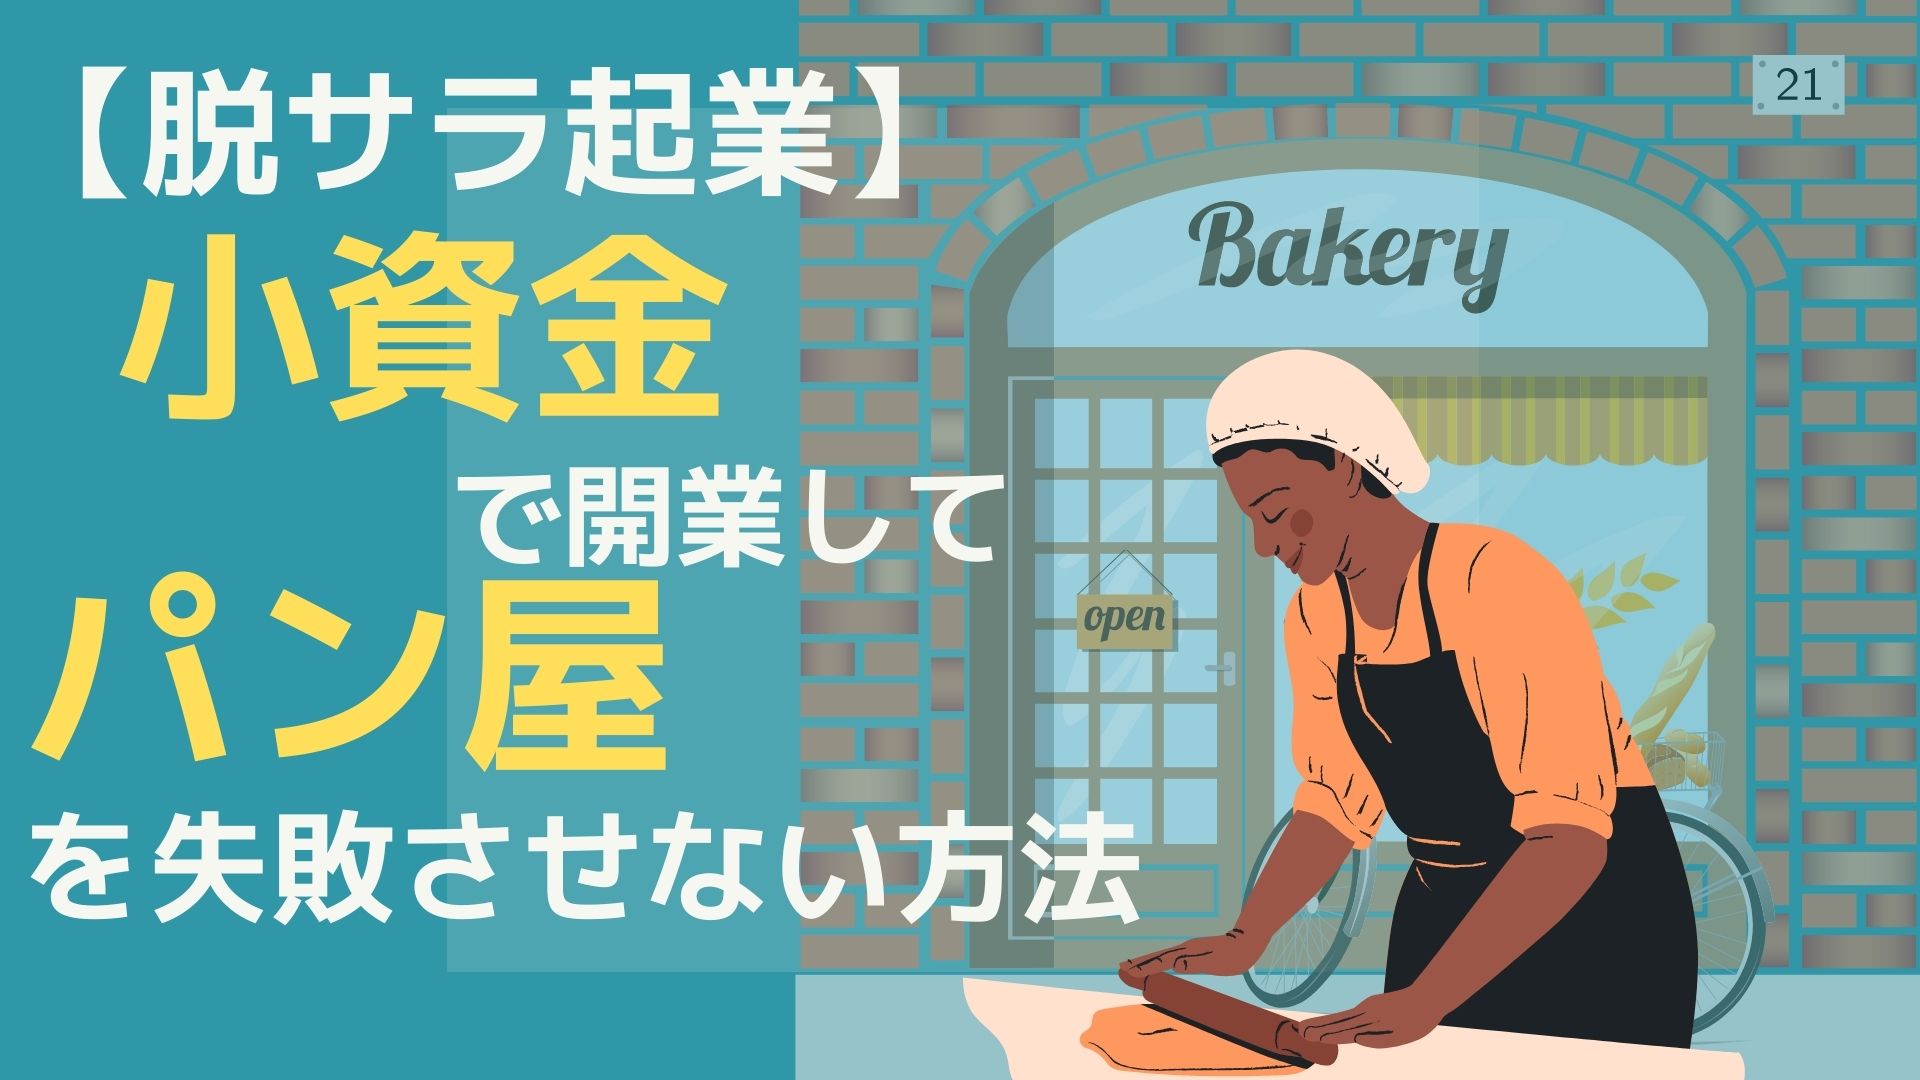 【脱サラ起業】小資金で開業して、パン屋を失敗させない方法。